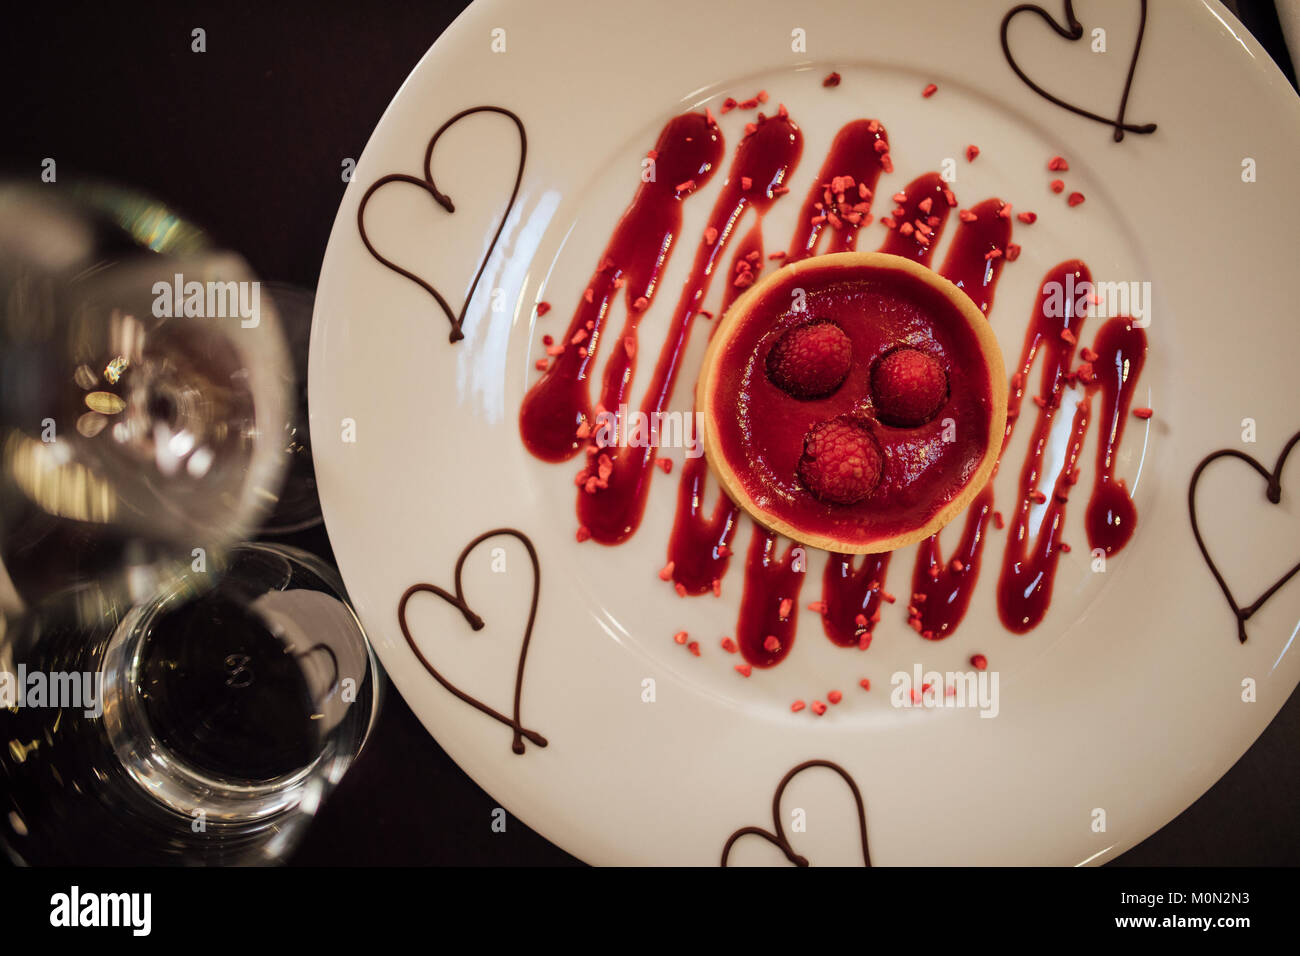 Passage tiré d'un dessert spécial Saint-Valentin dans un restaurant. Il s'agit d'une tarte aux framboises avec sauce au chocolat et coulis de cœurs. Banque D'Images